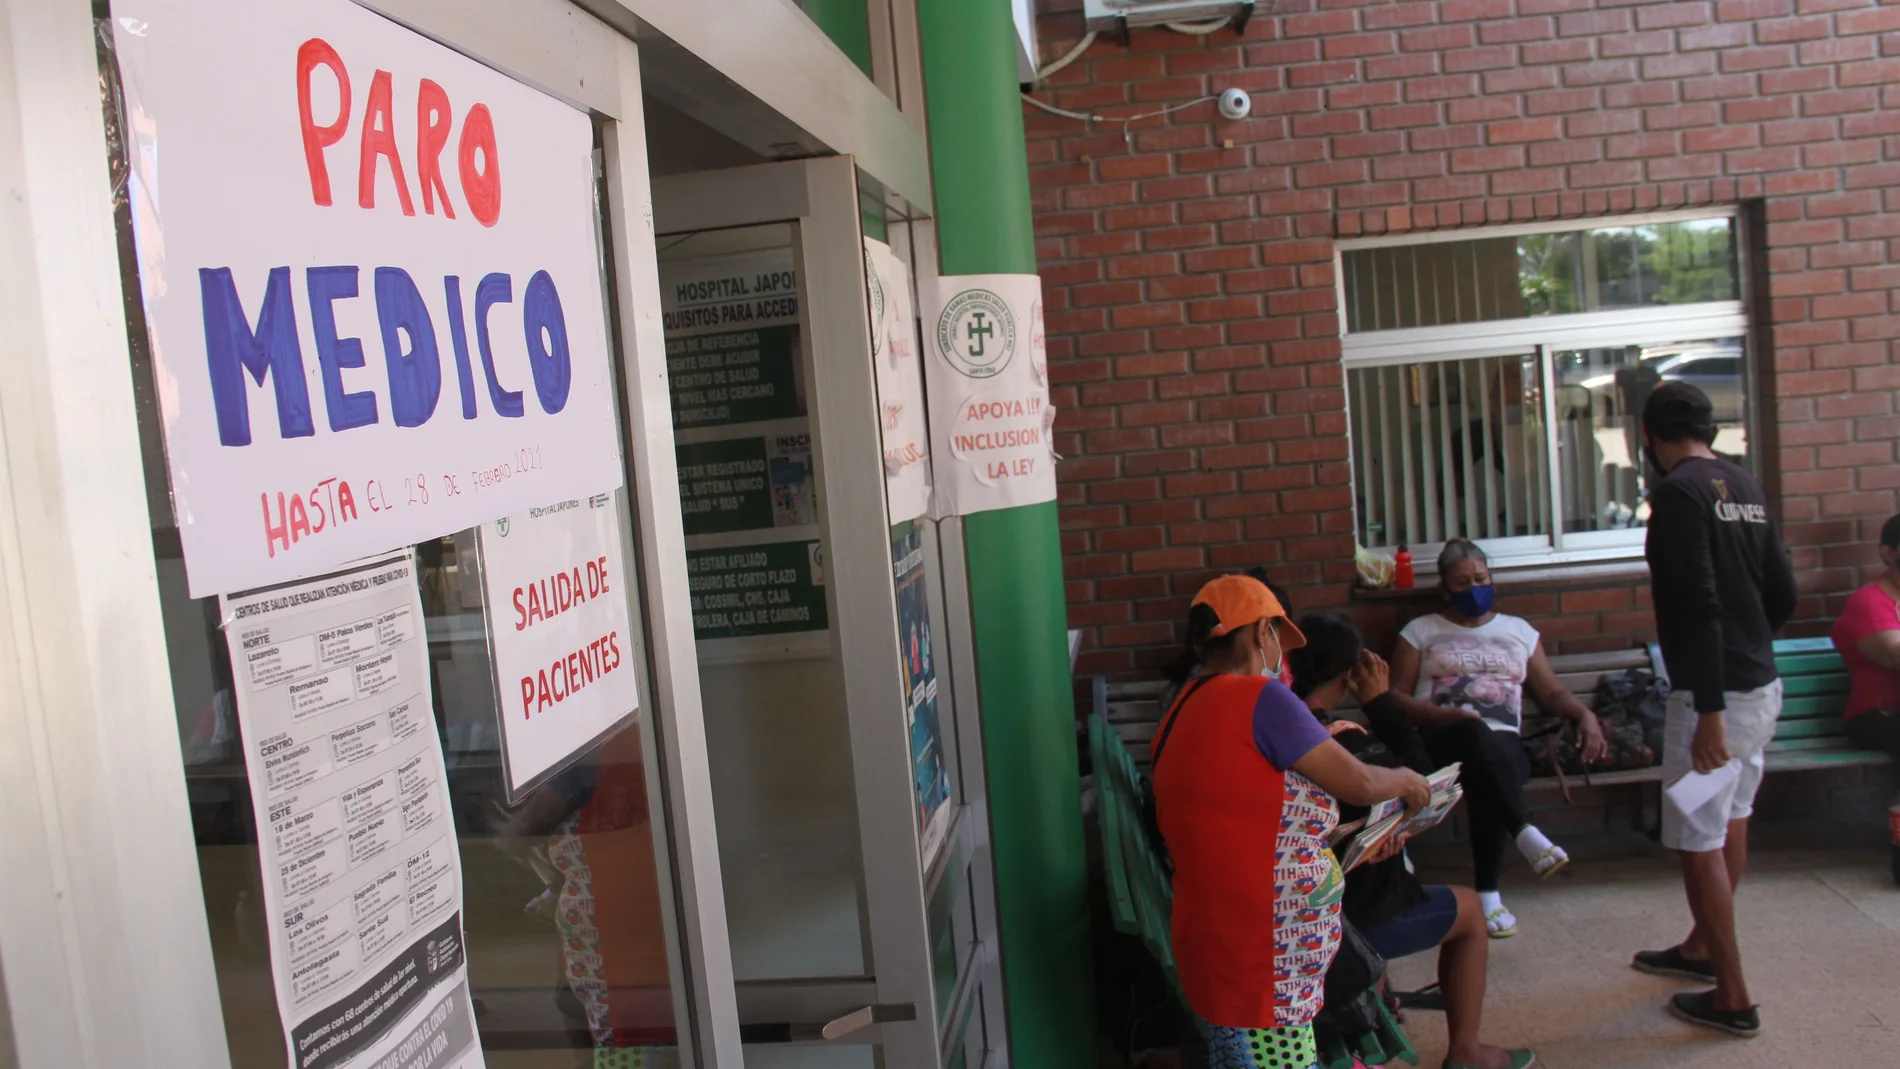 AME7594. SANTA CRUZ (BOLIVIA), 23/02/2021.- Vista de carteles alusivos al paro médico hoy en la ciudad de Santa Cruz (Bolivia). El sector de salud de Bolivia cumple este martes cinco días de huelga y protestas contra la ley de "Emergencia Sanitaria" promulgada por el Gobierno del presidente Luis Arce, bajo la advertencia de que no retrocederán hasta conseguir la anulación de la norma. EFE/Juan Carlos Torrejon